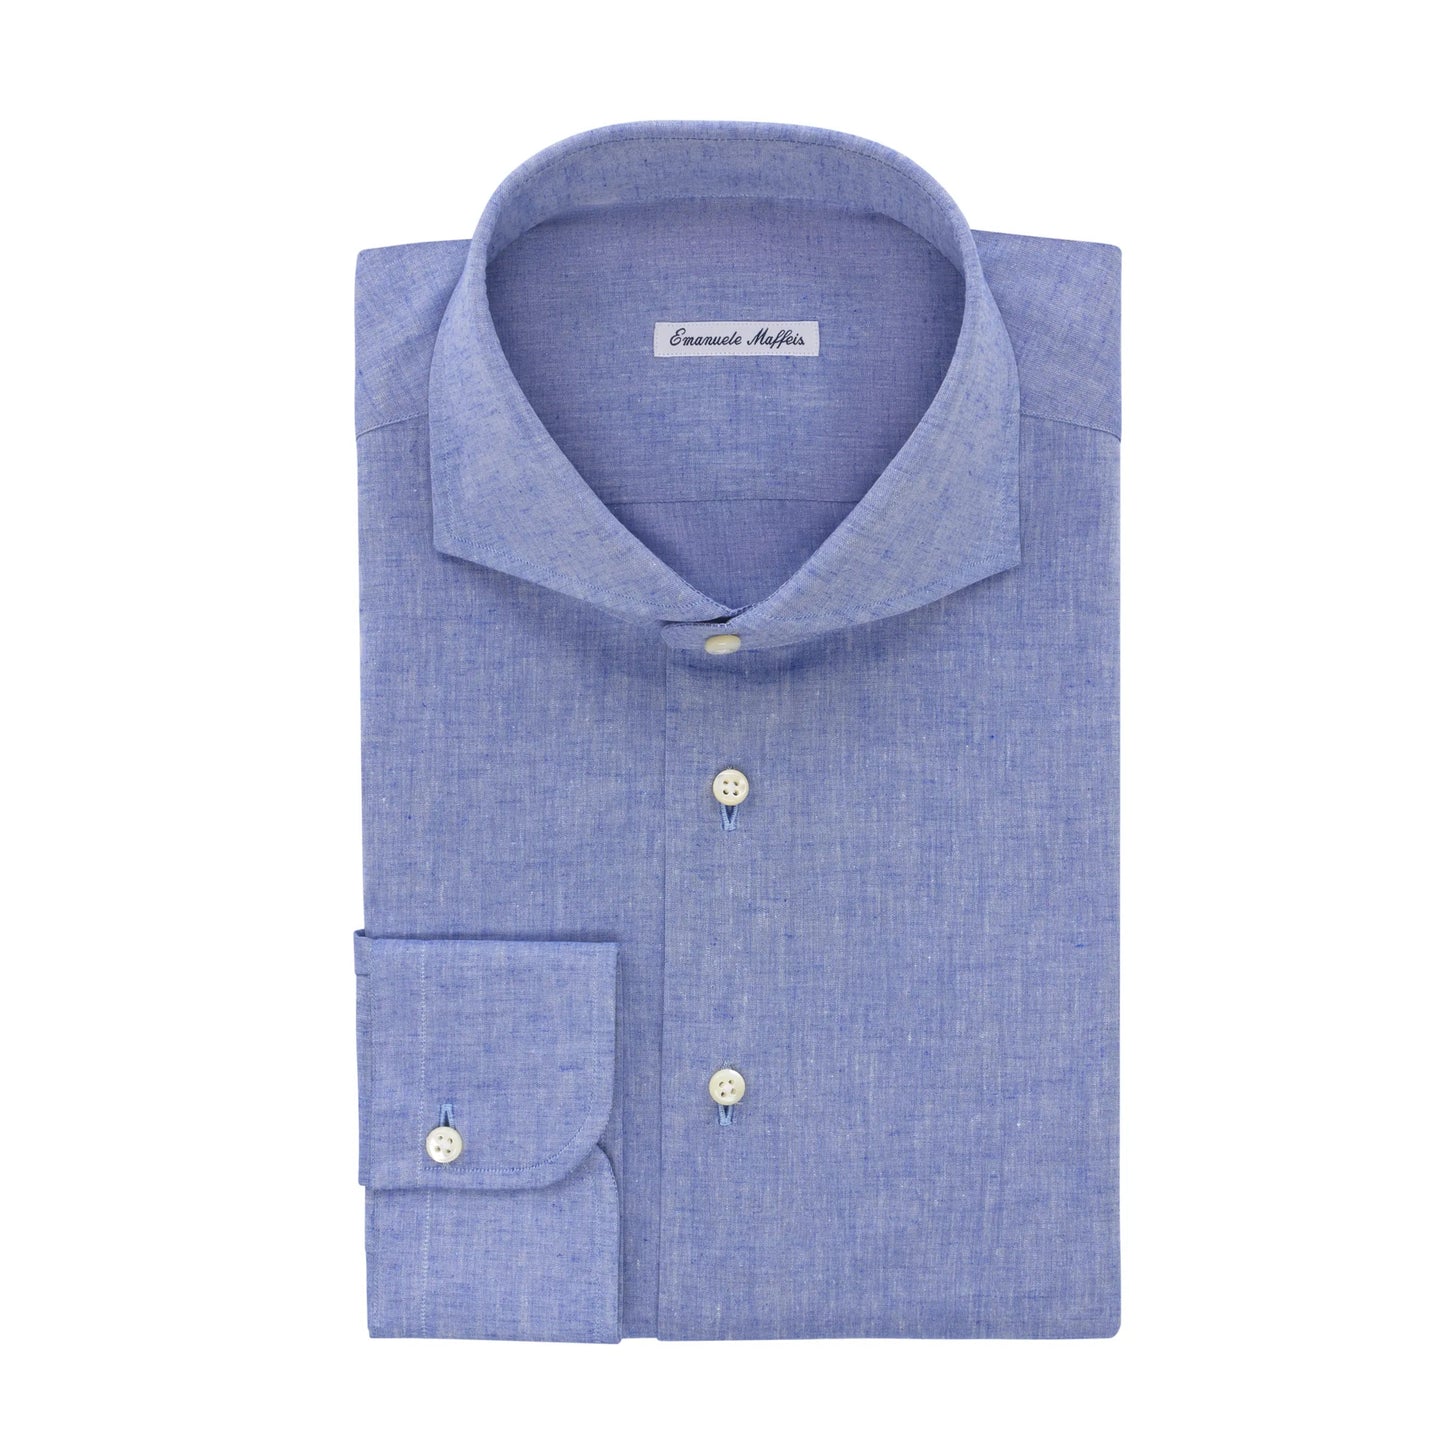 Emanuele Maffeis Cotton and Linen-Blend Shirt - SARTALE